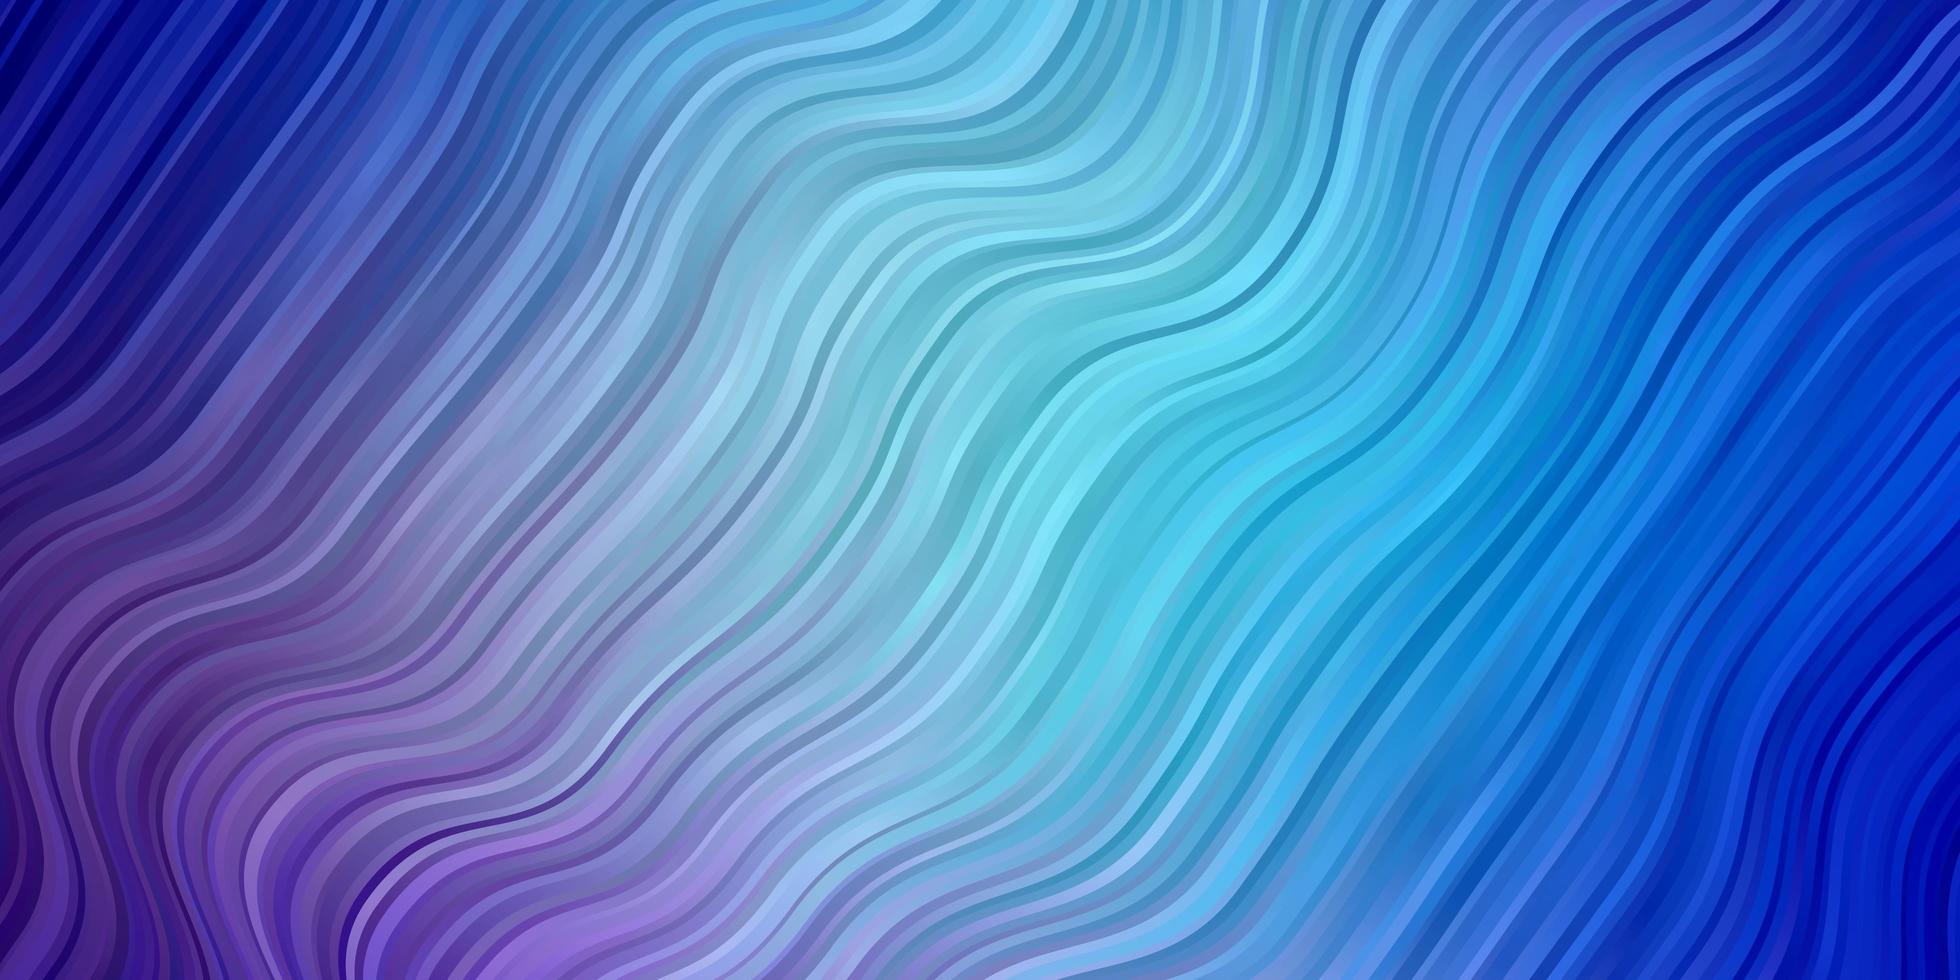 ljusrosa, blå vektorstruktur med kurvor. vektor